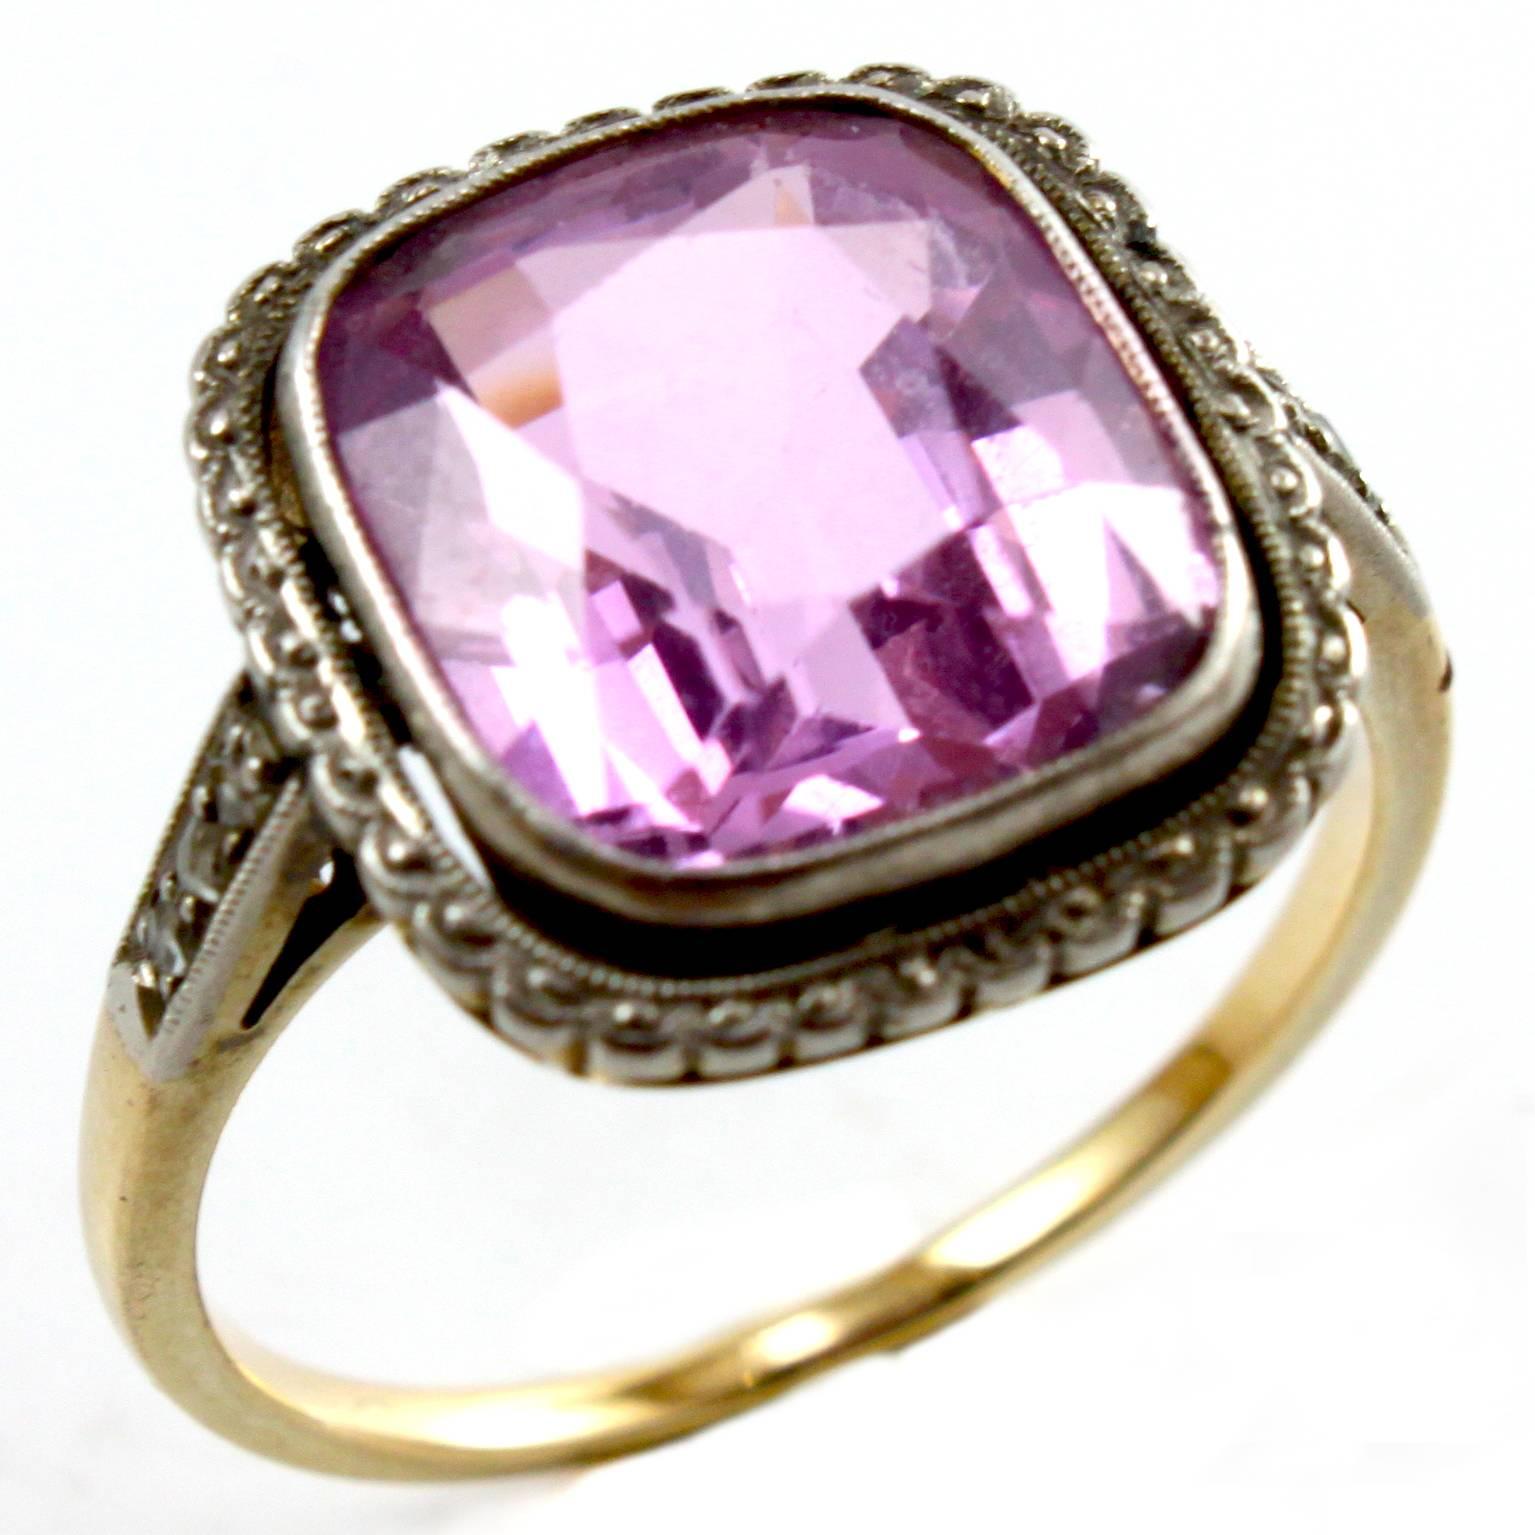 Ein anmutiger edwardianischer Ring mit einem zentralen rosa Topas aus einer alten Mine, mit einem Gewicht von ca. 6 Karat, flankiert von kleinen Diamanten im Rautenschliff - der rosa Topas hat einen sehr schönen Farbton. 